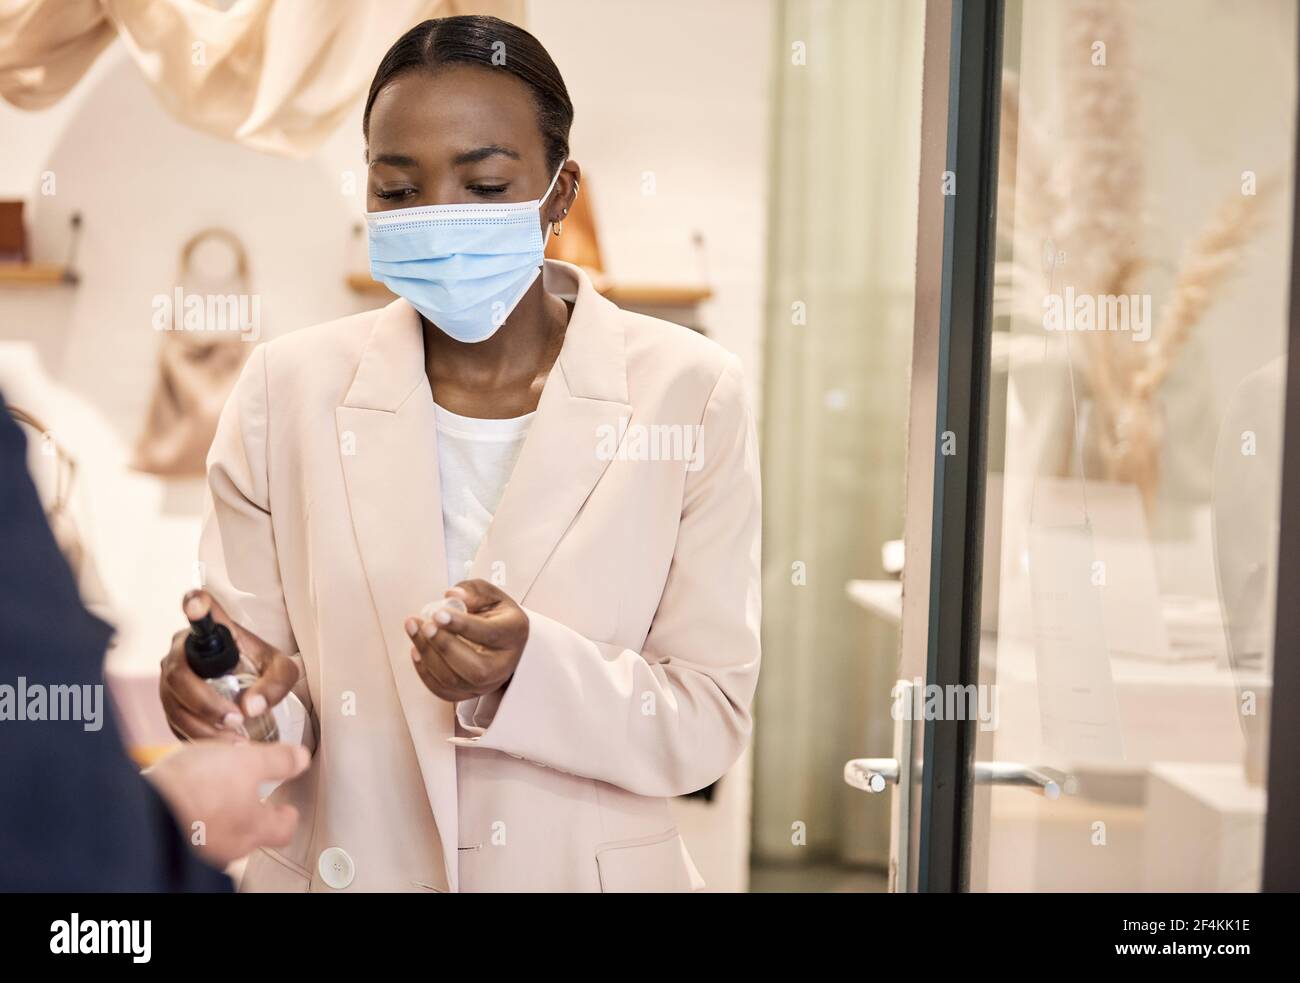 Mujer afroamericana propietaria de la tienda aplicando desinfectante a un cliente manos Foto de stock